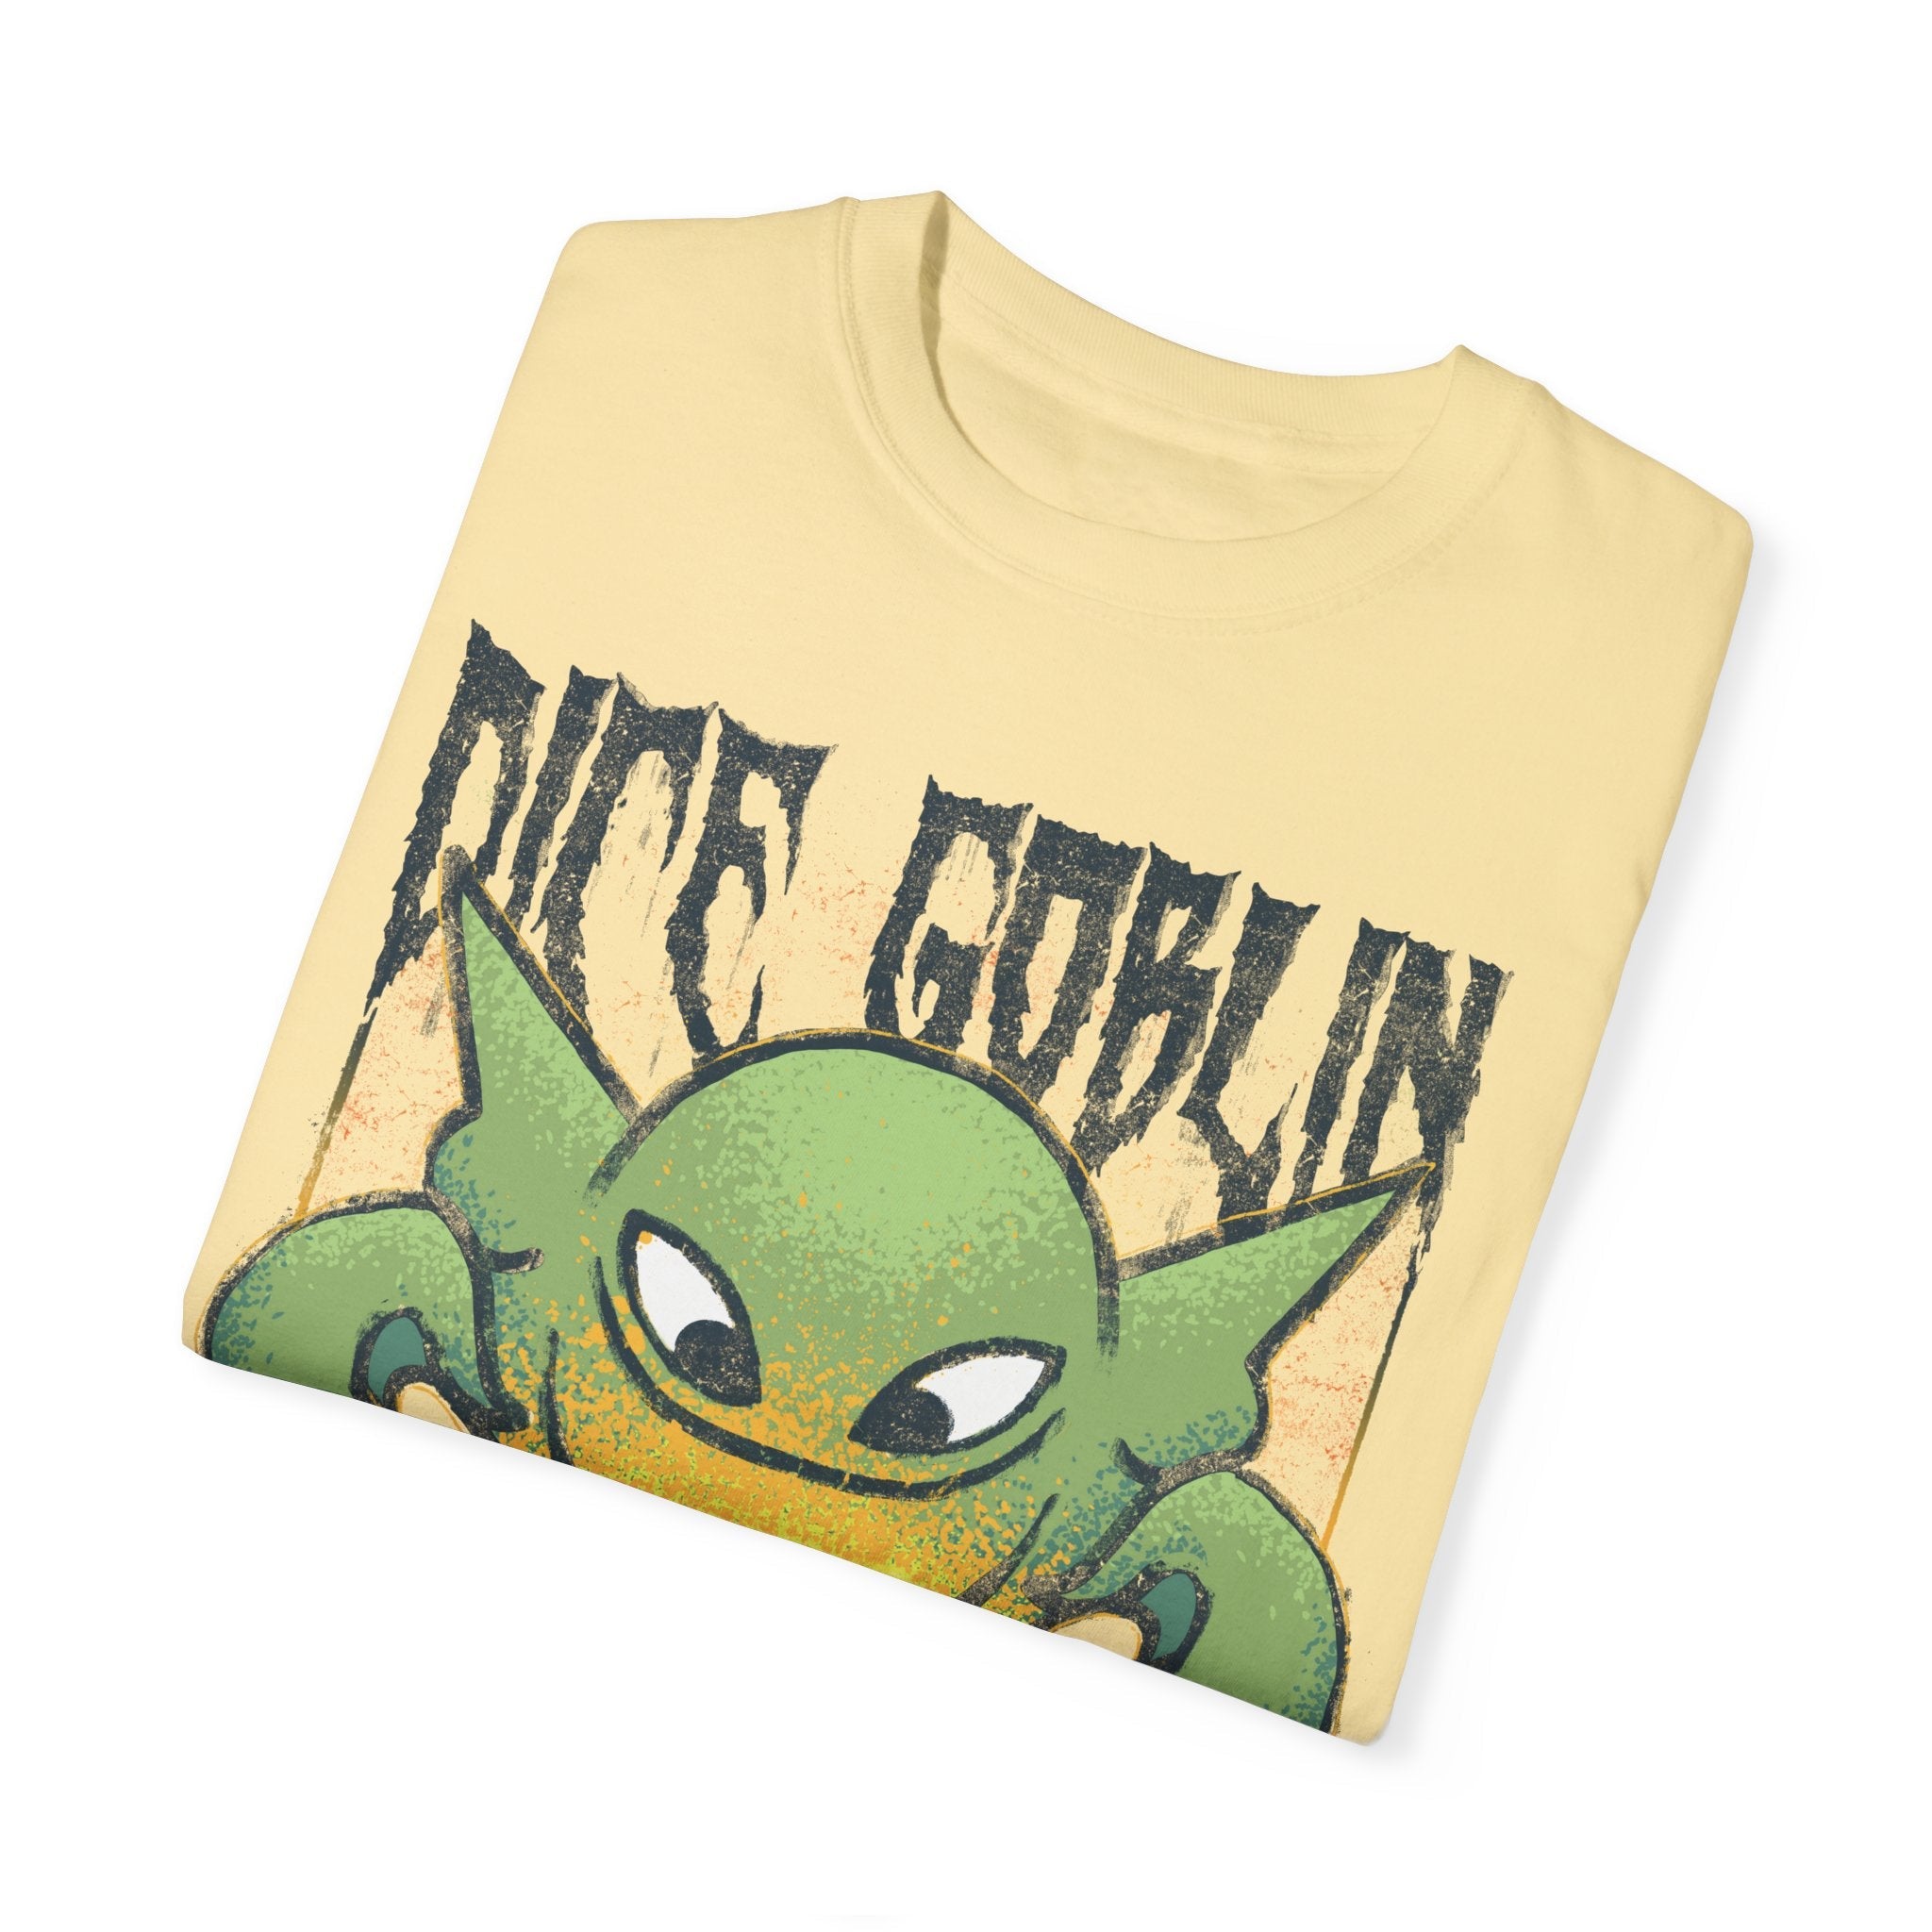 Dice Goblin | Metal | Comfort Colors Premium T-Shirt - T-Shirt - Ace of Gnomes - 62582727281161572259